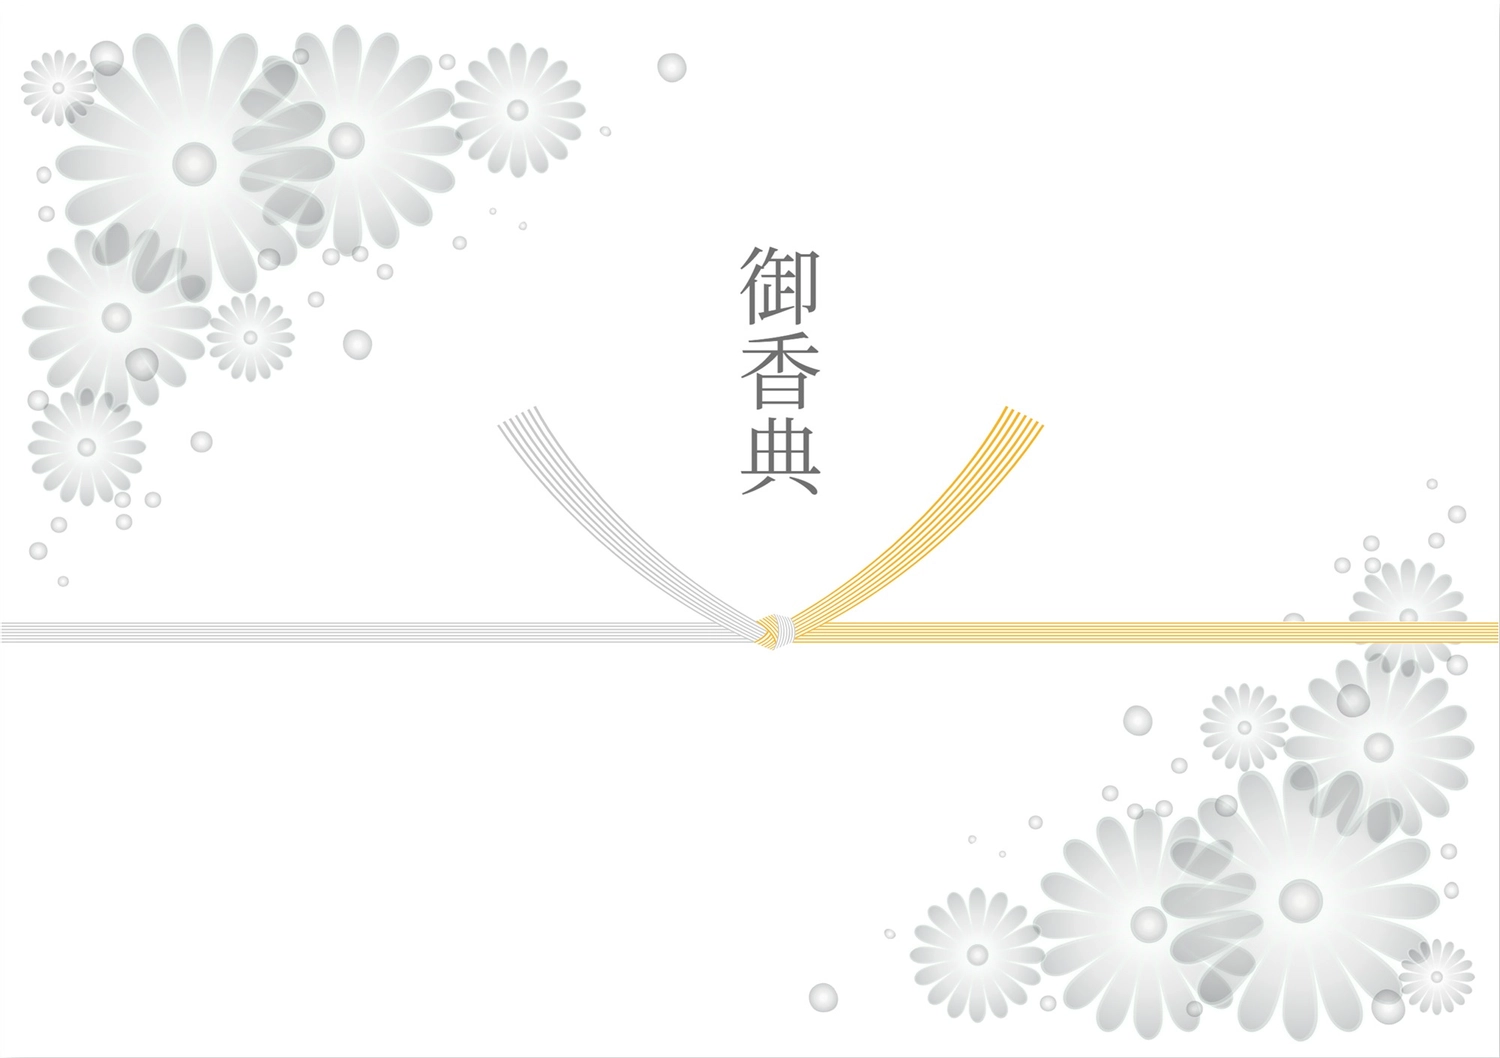 花柄のついた御香典, Mincho style, After mourning, condolence gift, Sales promotion tool template